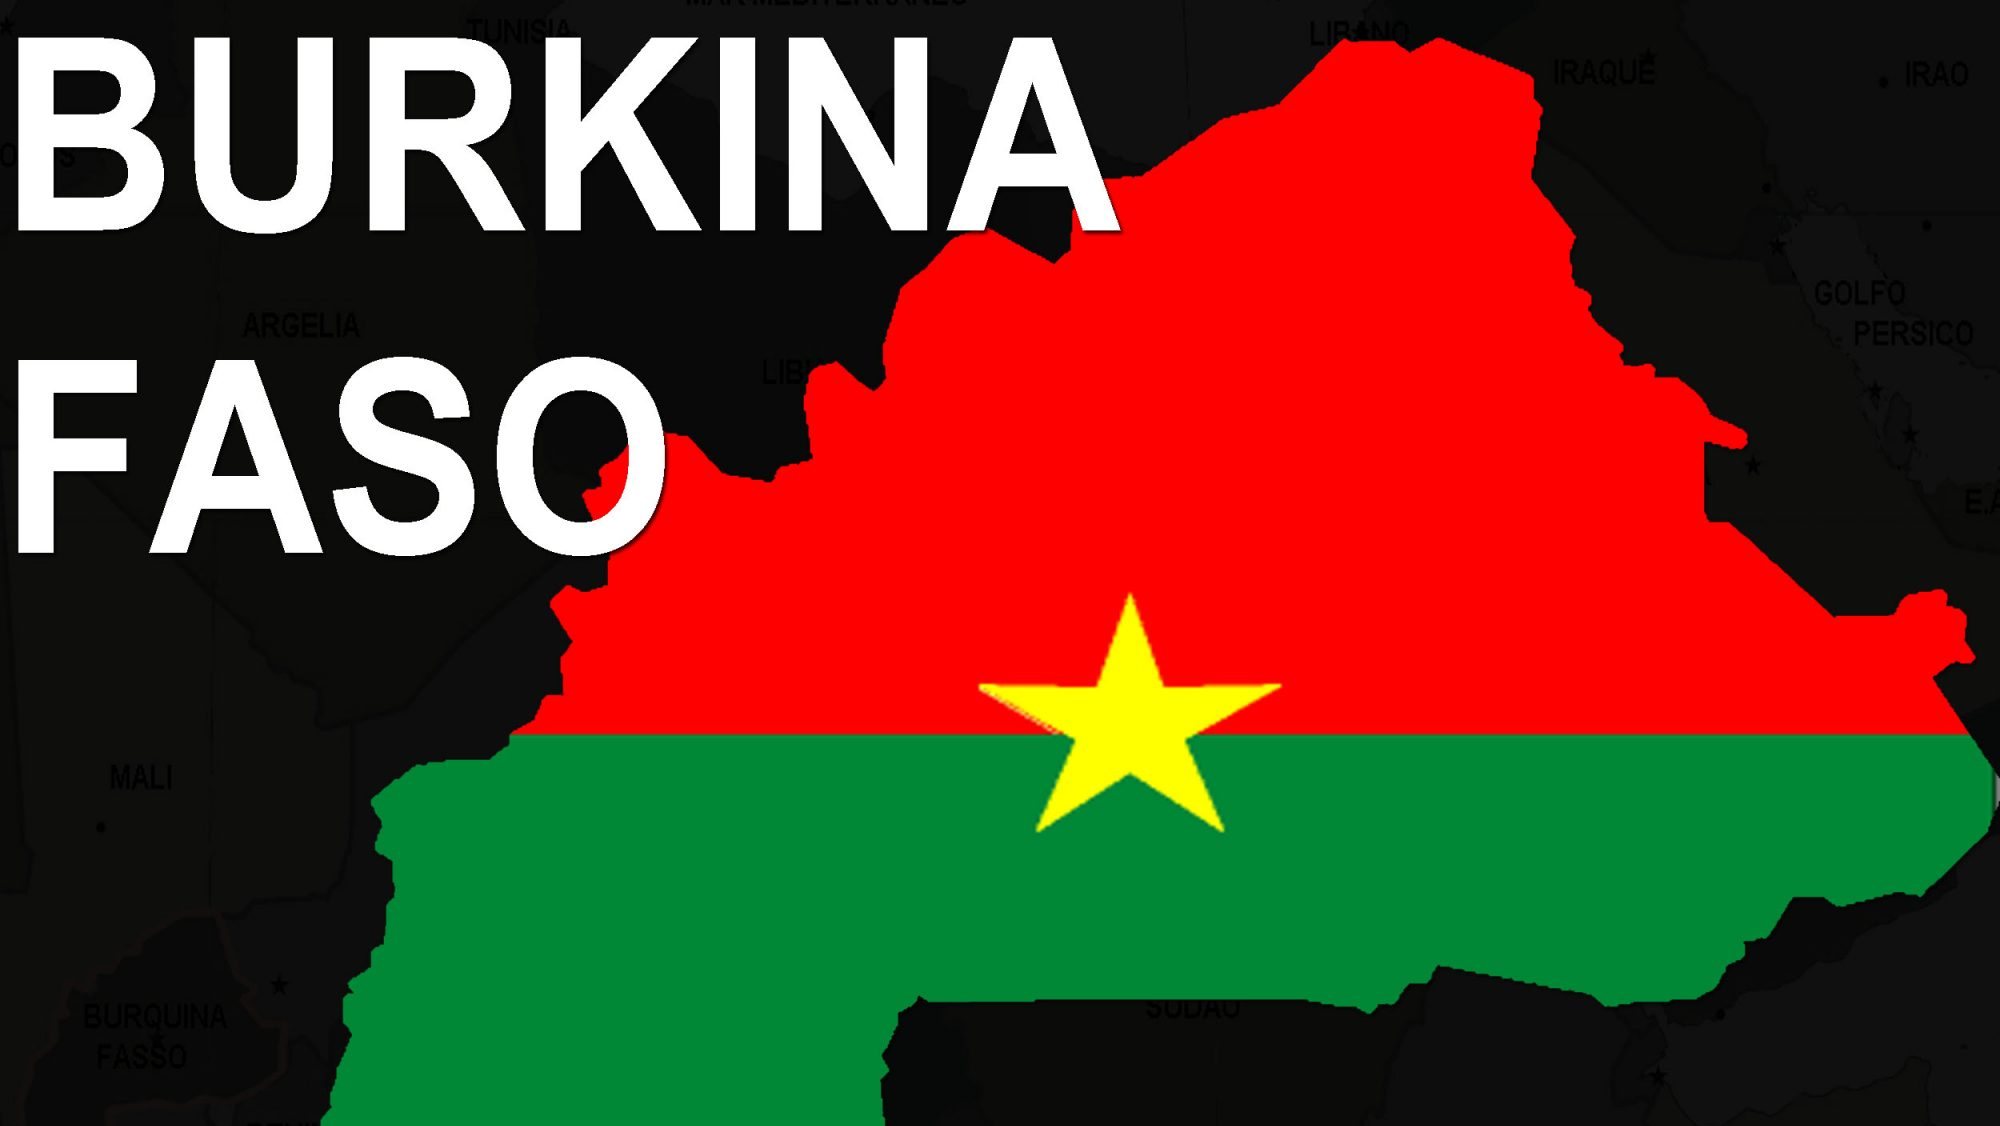 O Burkina Faso tem vindo a enfrentar, nos últimos seis anos, ataques jihadistas cada vez mais frequentes e mortais